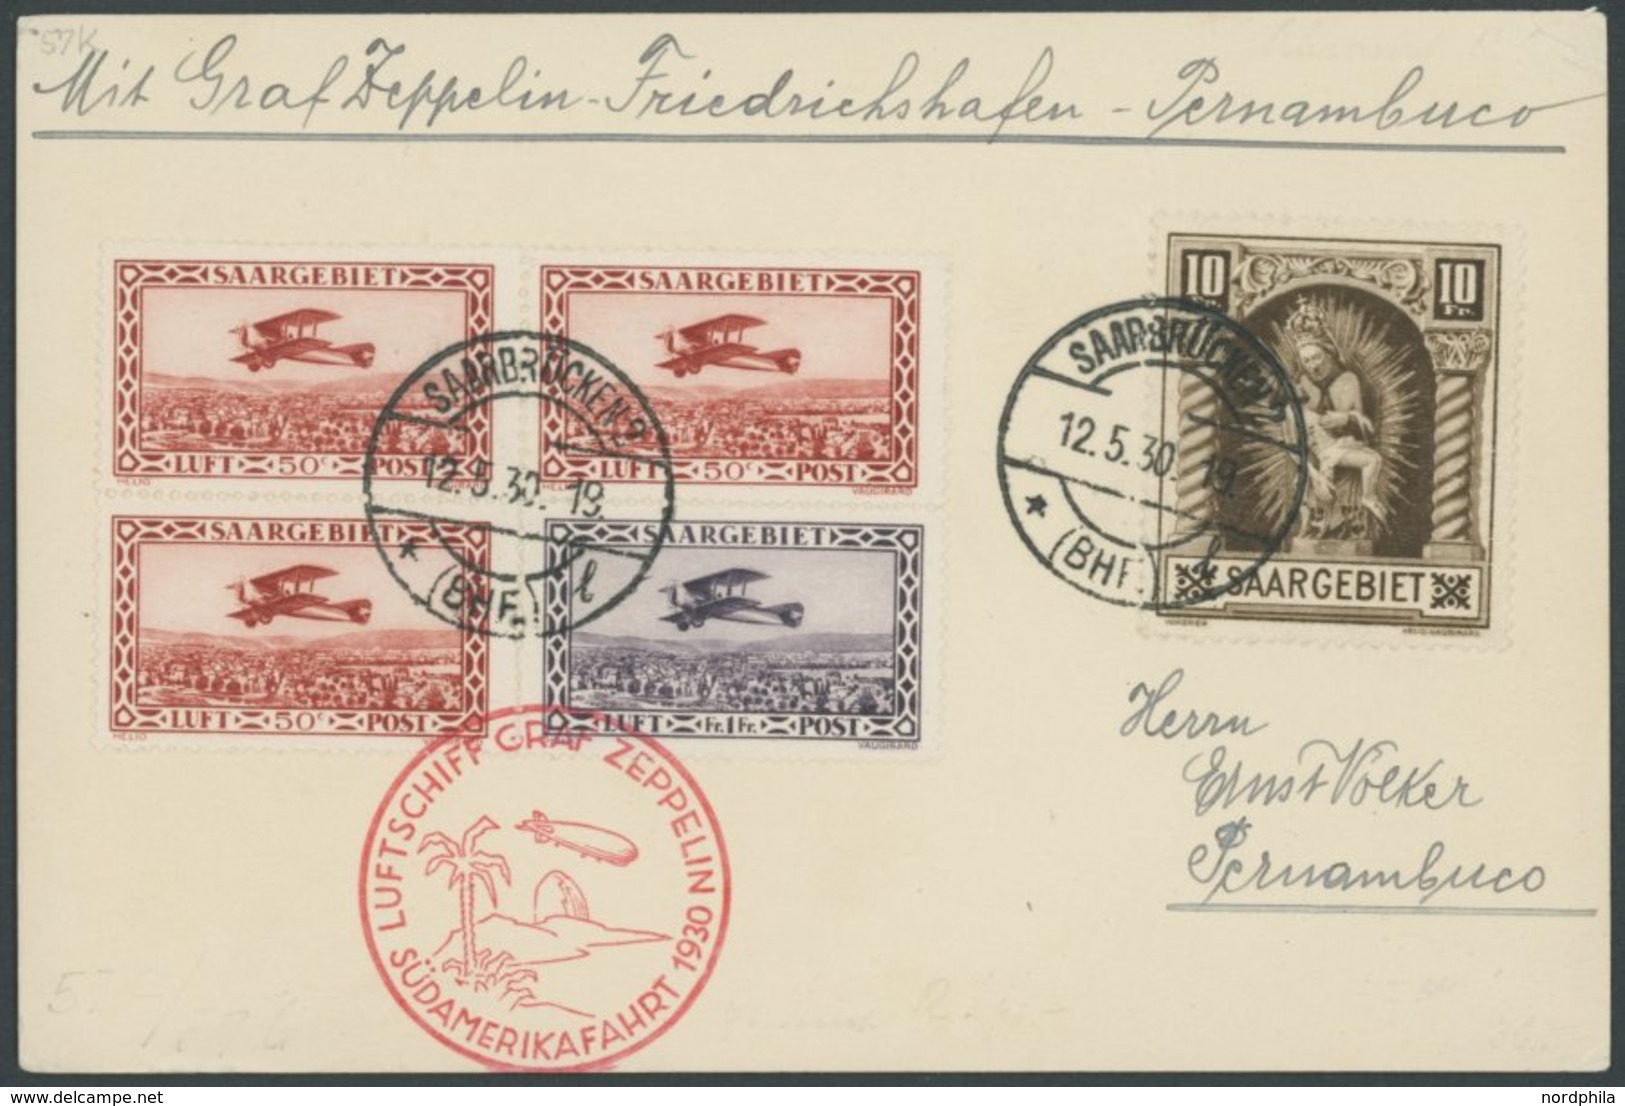 ZULEITUNGSPOST 57K BRIEF, Saargebiet: 1930, Südamerikafahrt, Friedrichshafen-Pernambuco, Frankiert U.a. Mit Mi.Nr. 103,  - Zeppelins